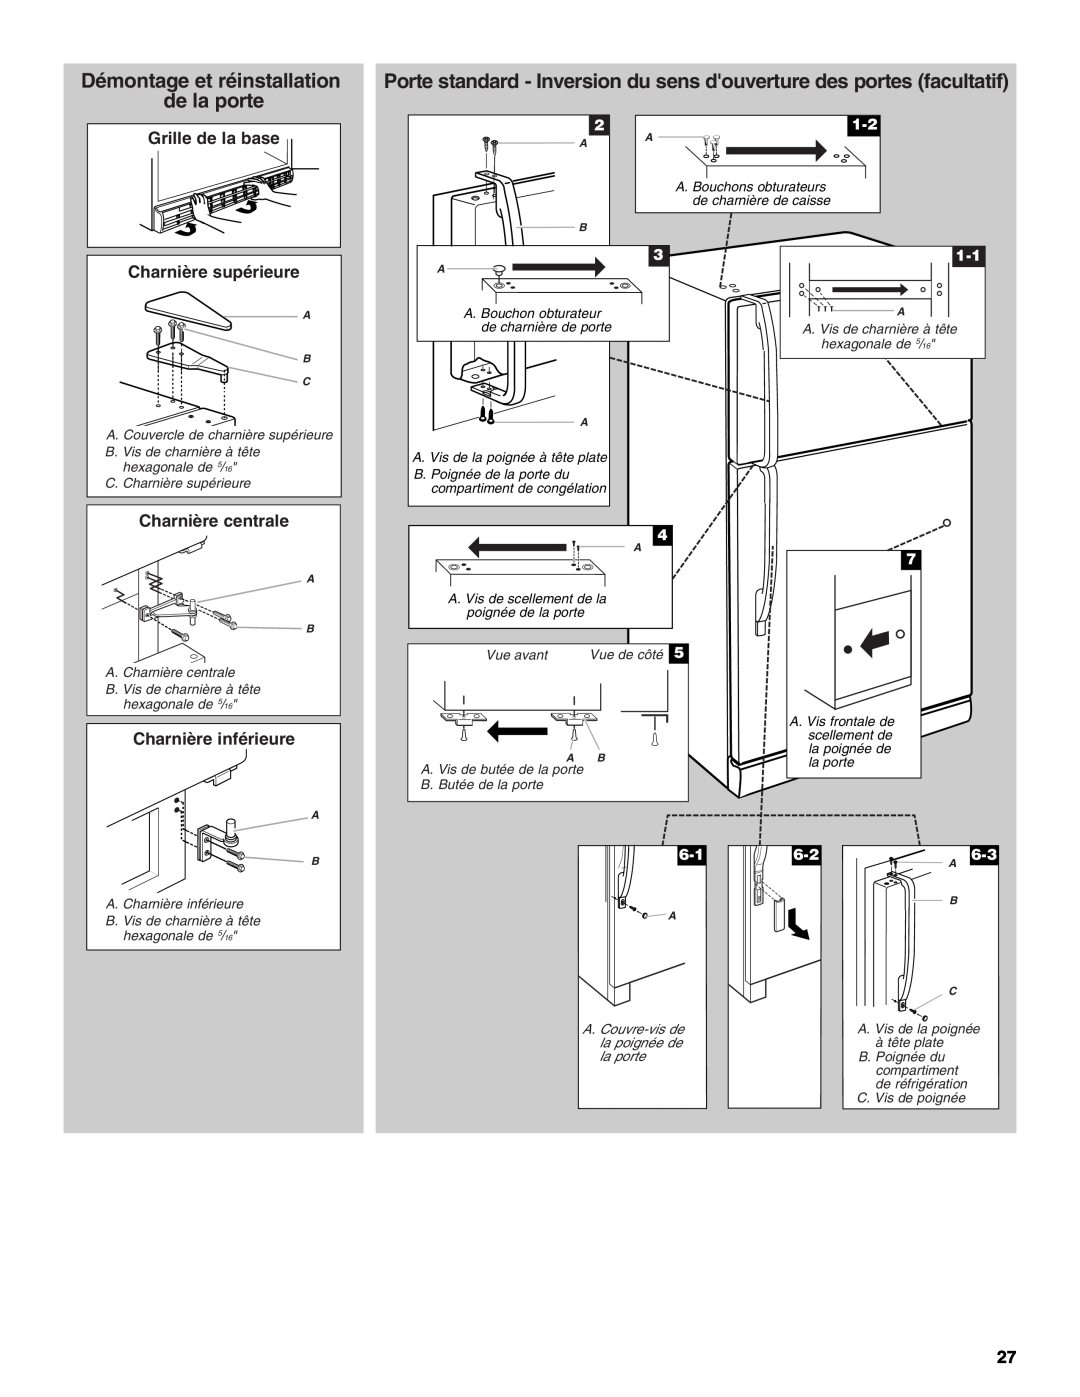 Whirlpool IT21AMXRQ00 Démontage et réinstallation de la porte, Grille de la base Charnière supérieure, Charnière centrale 